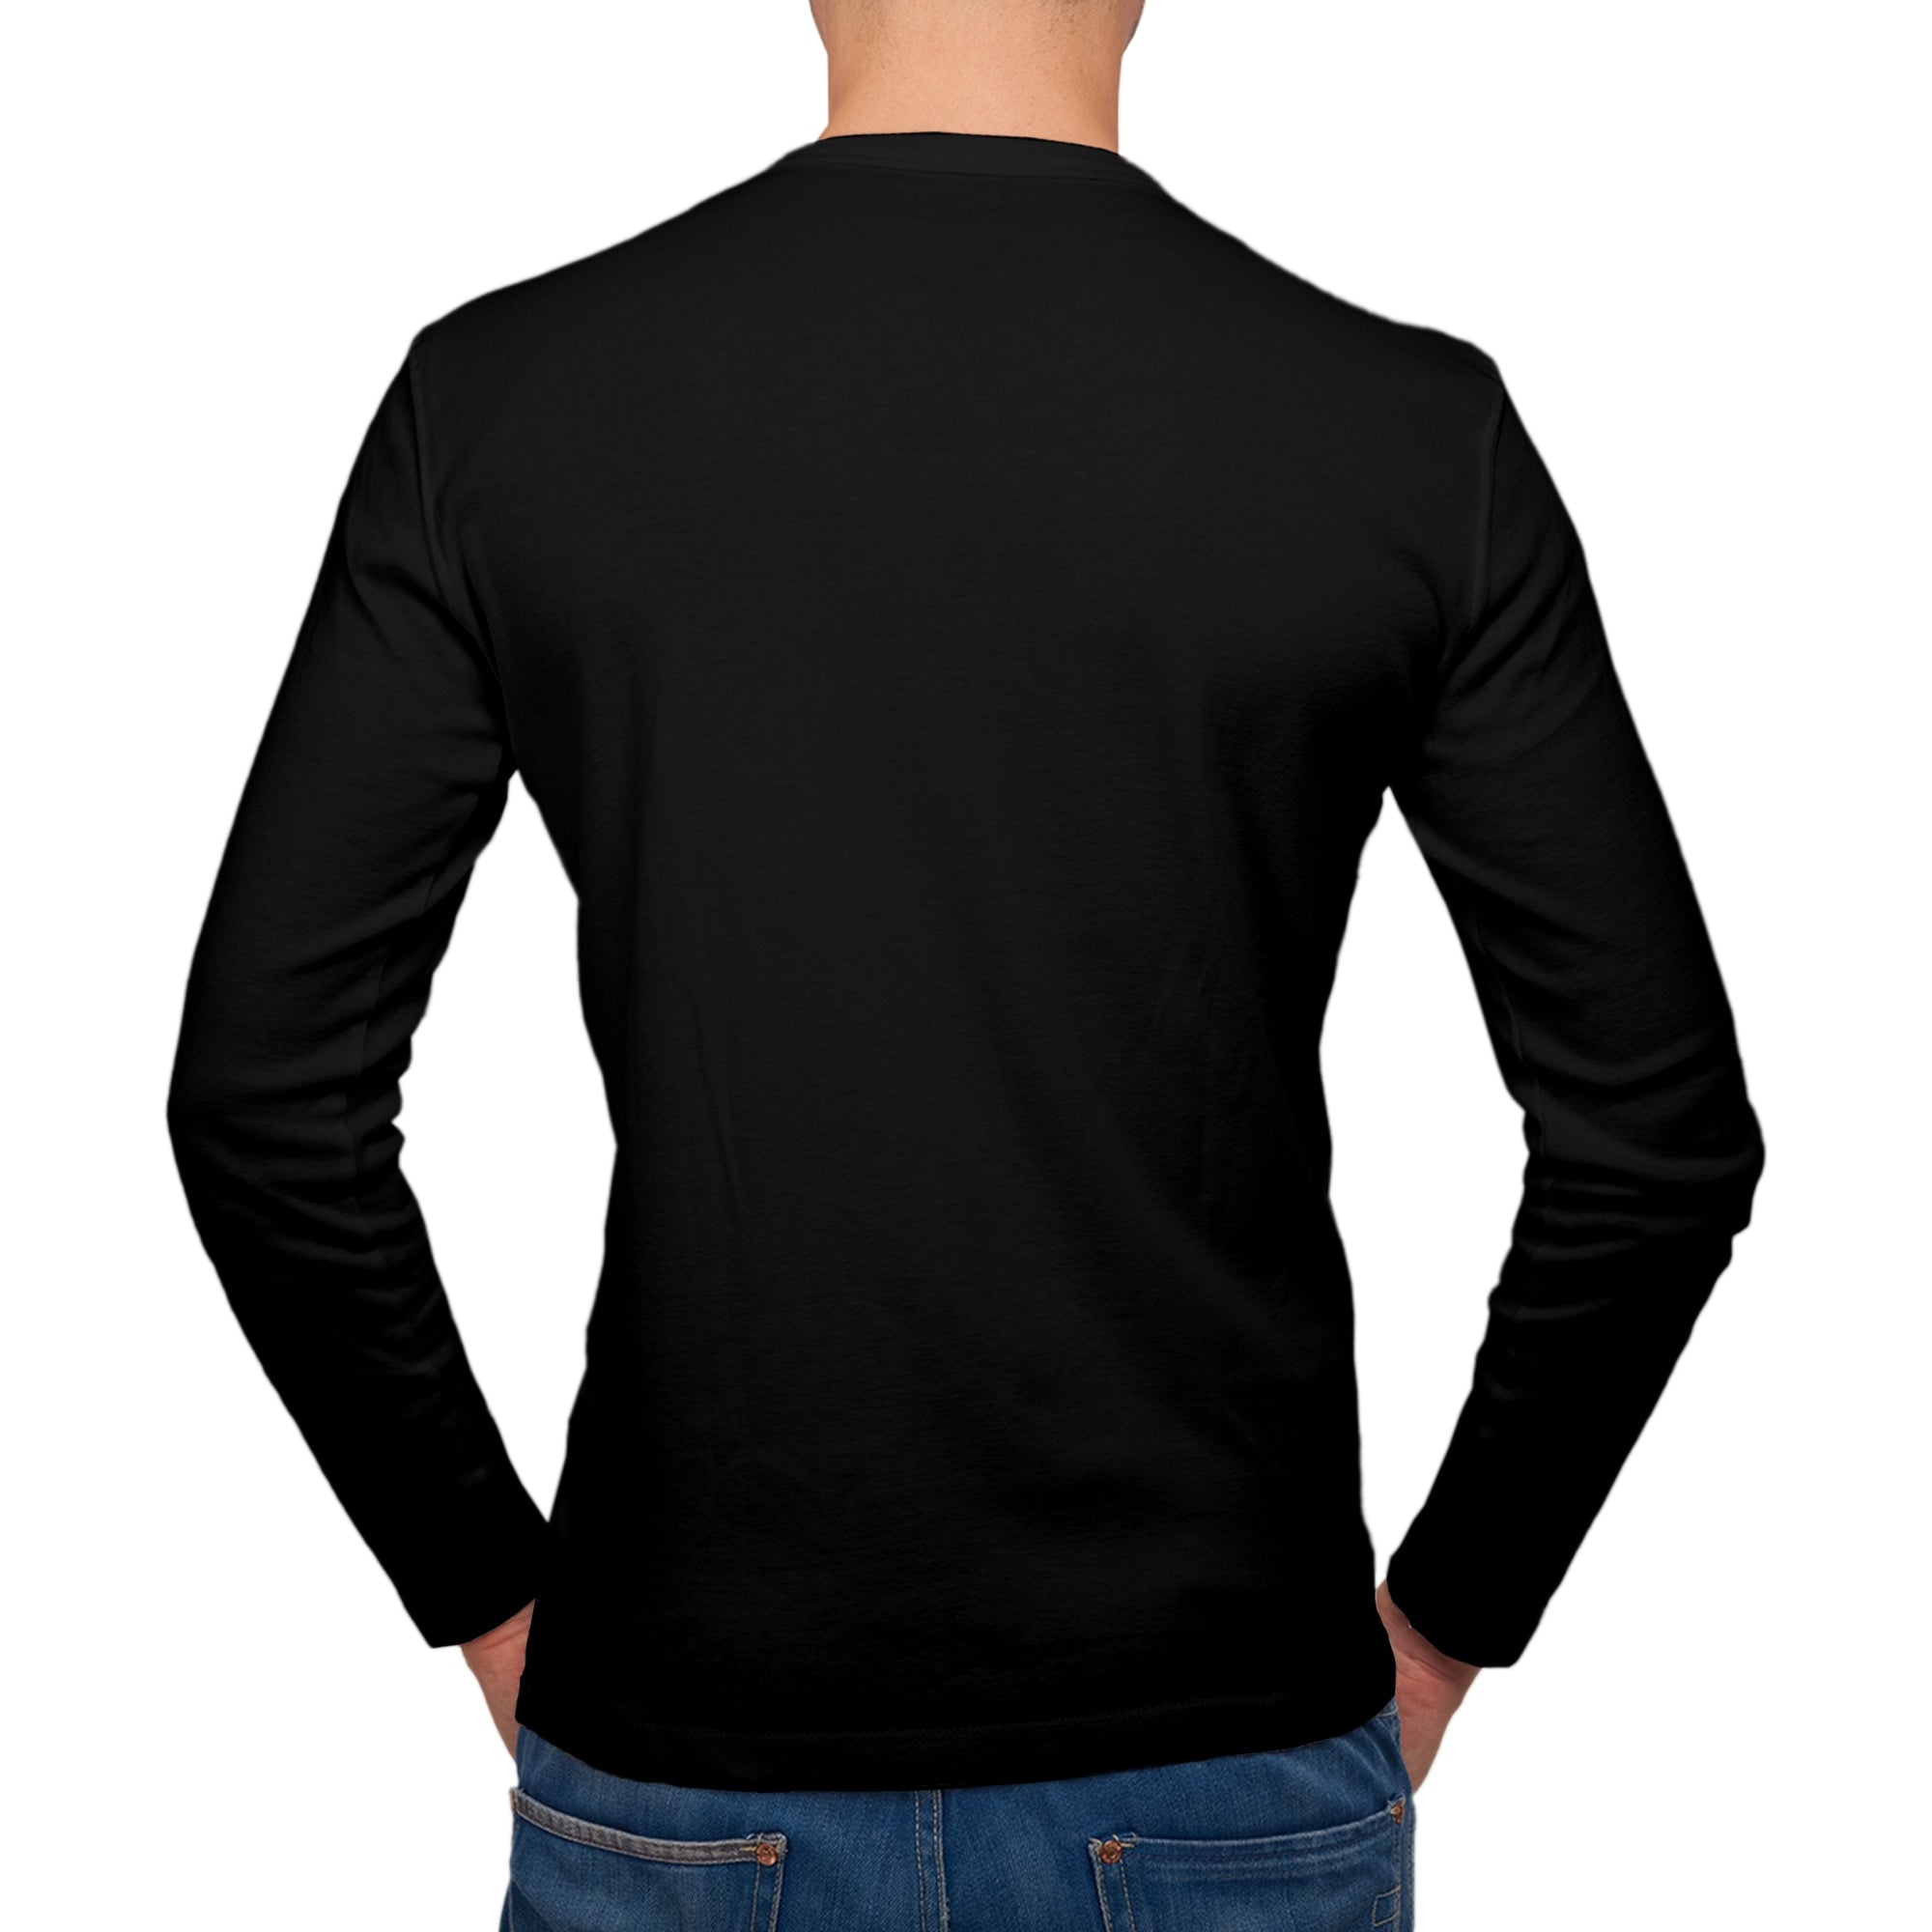 Full Sleeves Black T-Shirt For Men